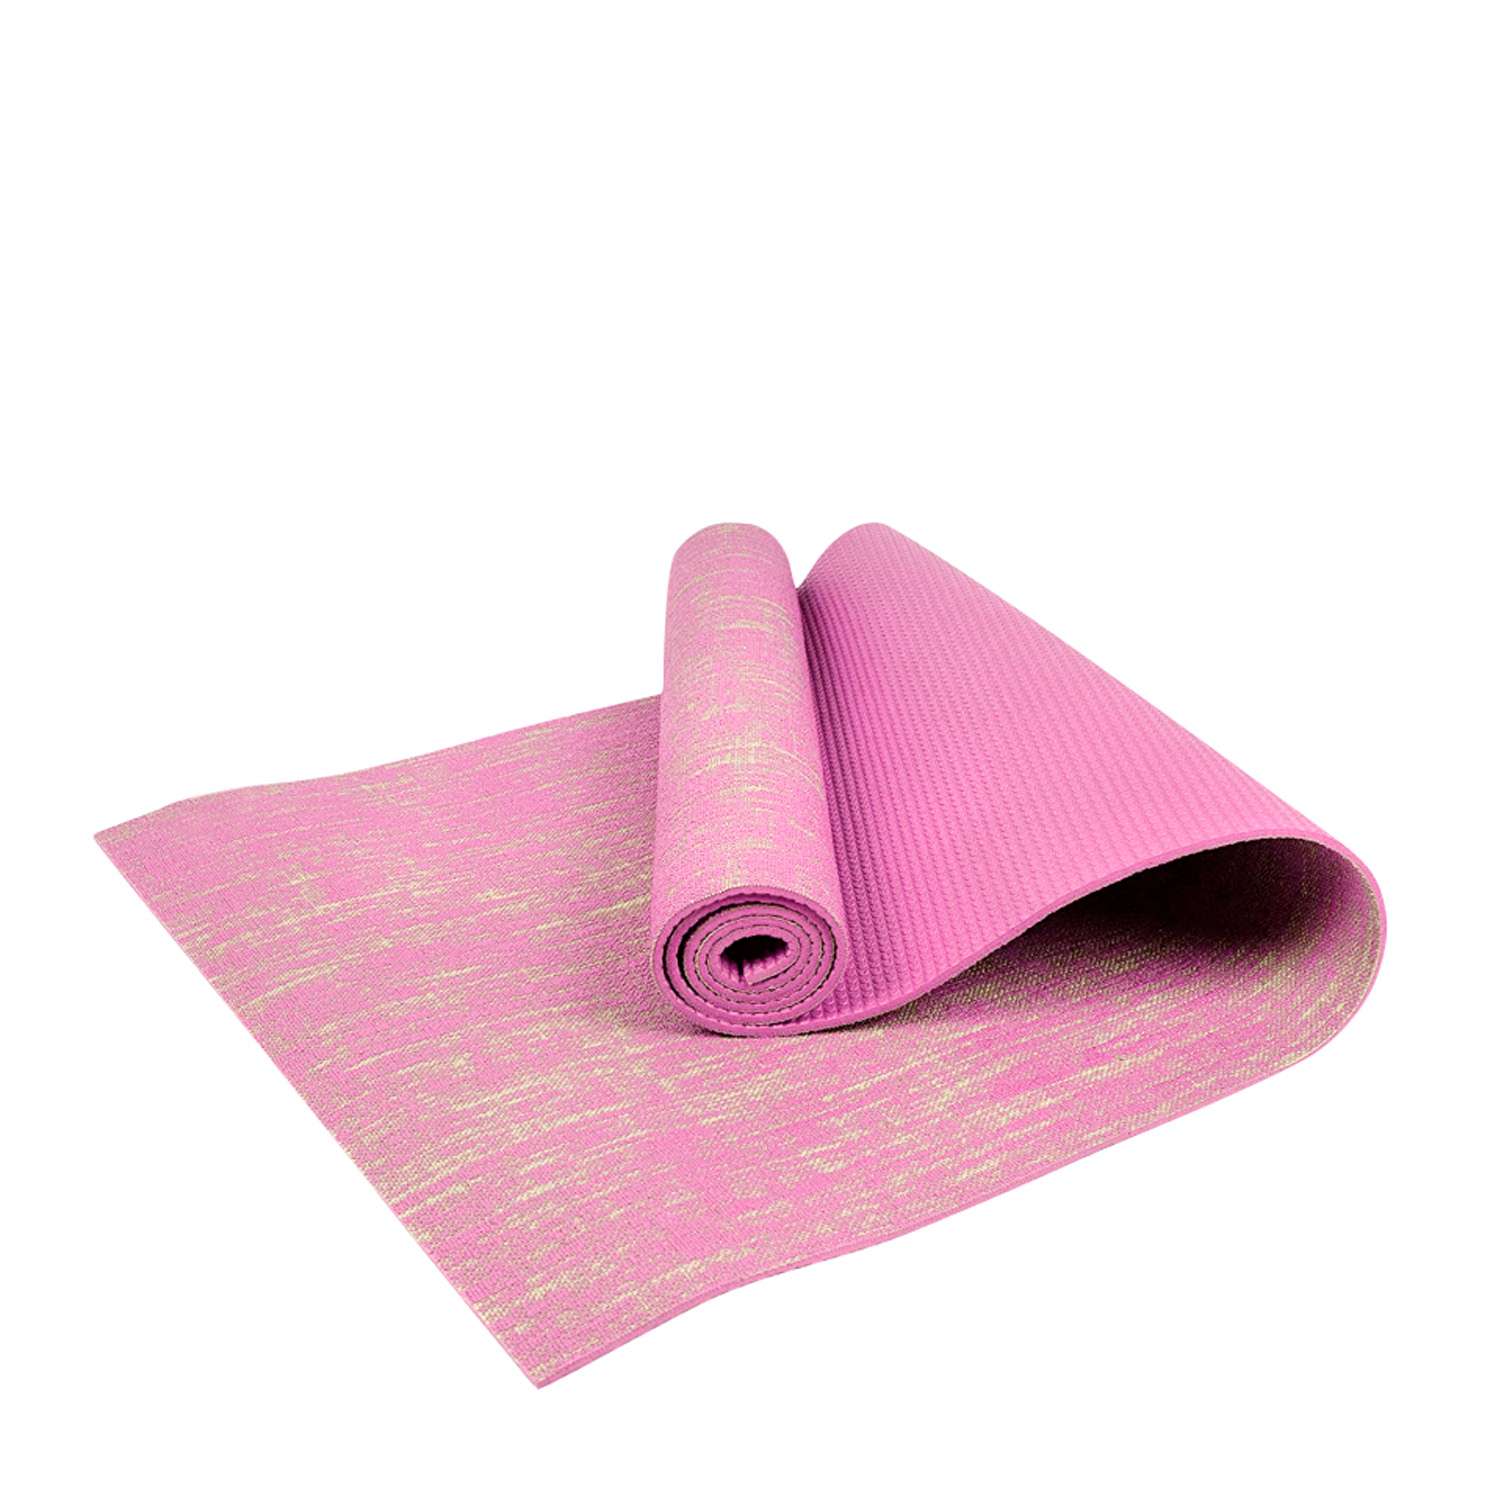 Коврик для йоги и фитнеса Urbanfit джутовый розовый - фото 1